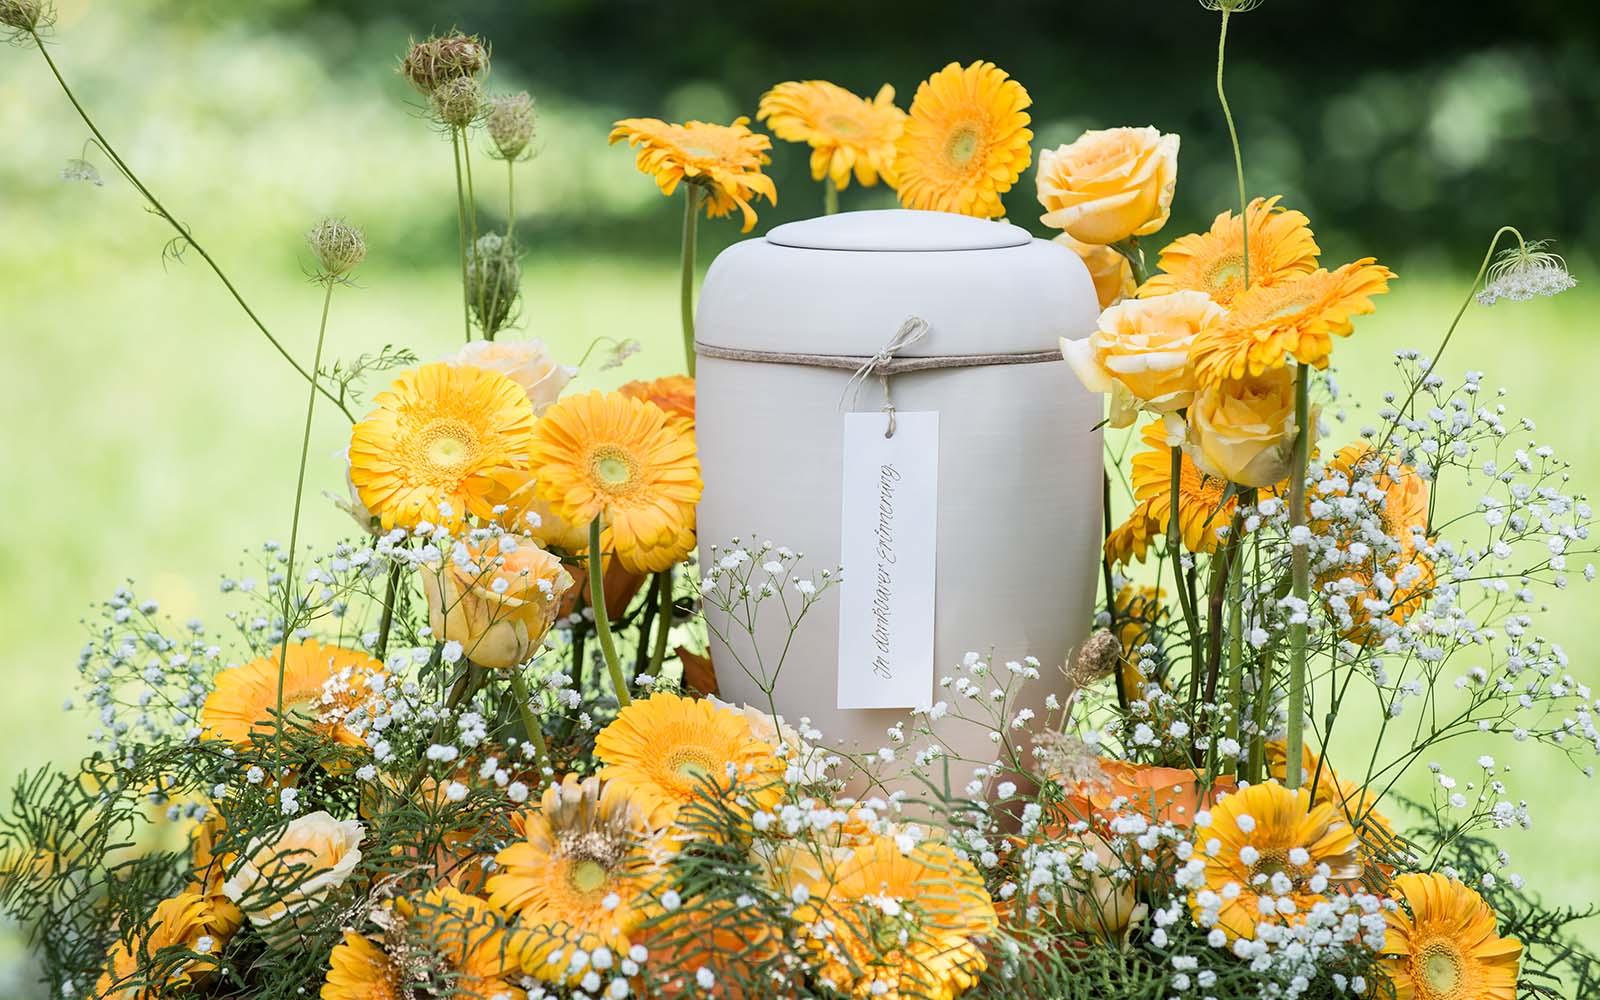 Eine sandfarbene, biologisch abbaubare Urne mit Papieranhänger steht umgeben von gelben Blumen.